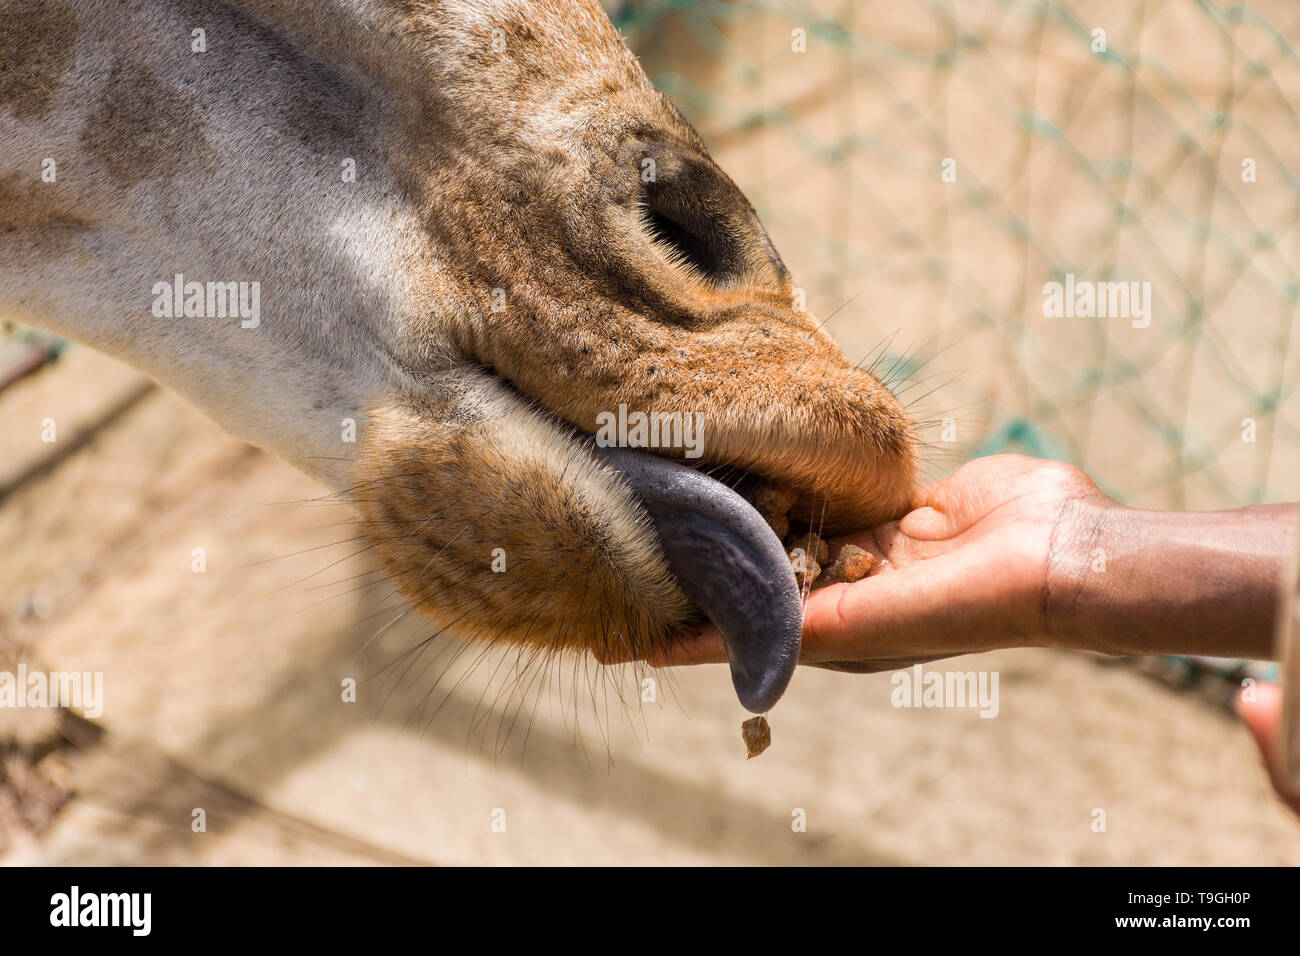 Rothschild Girafe (Giraffa camelopardalis rothschildi) d'être nourris à la main boulettes de nourriture Banque D'Images